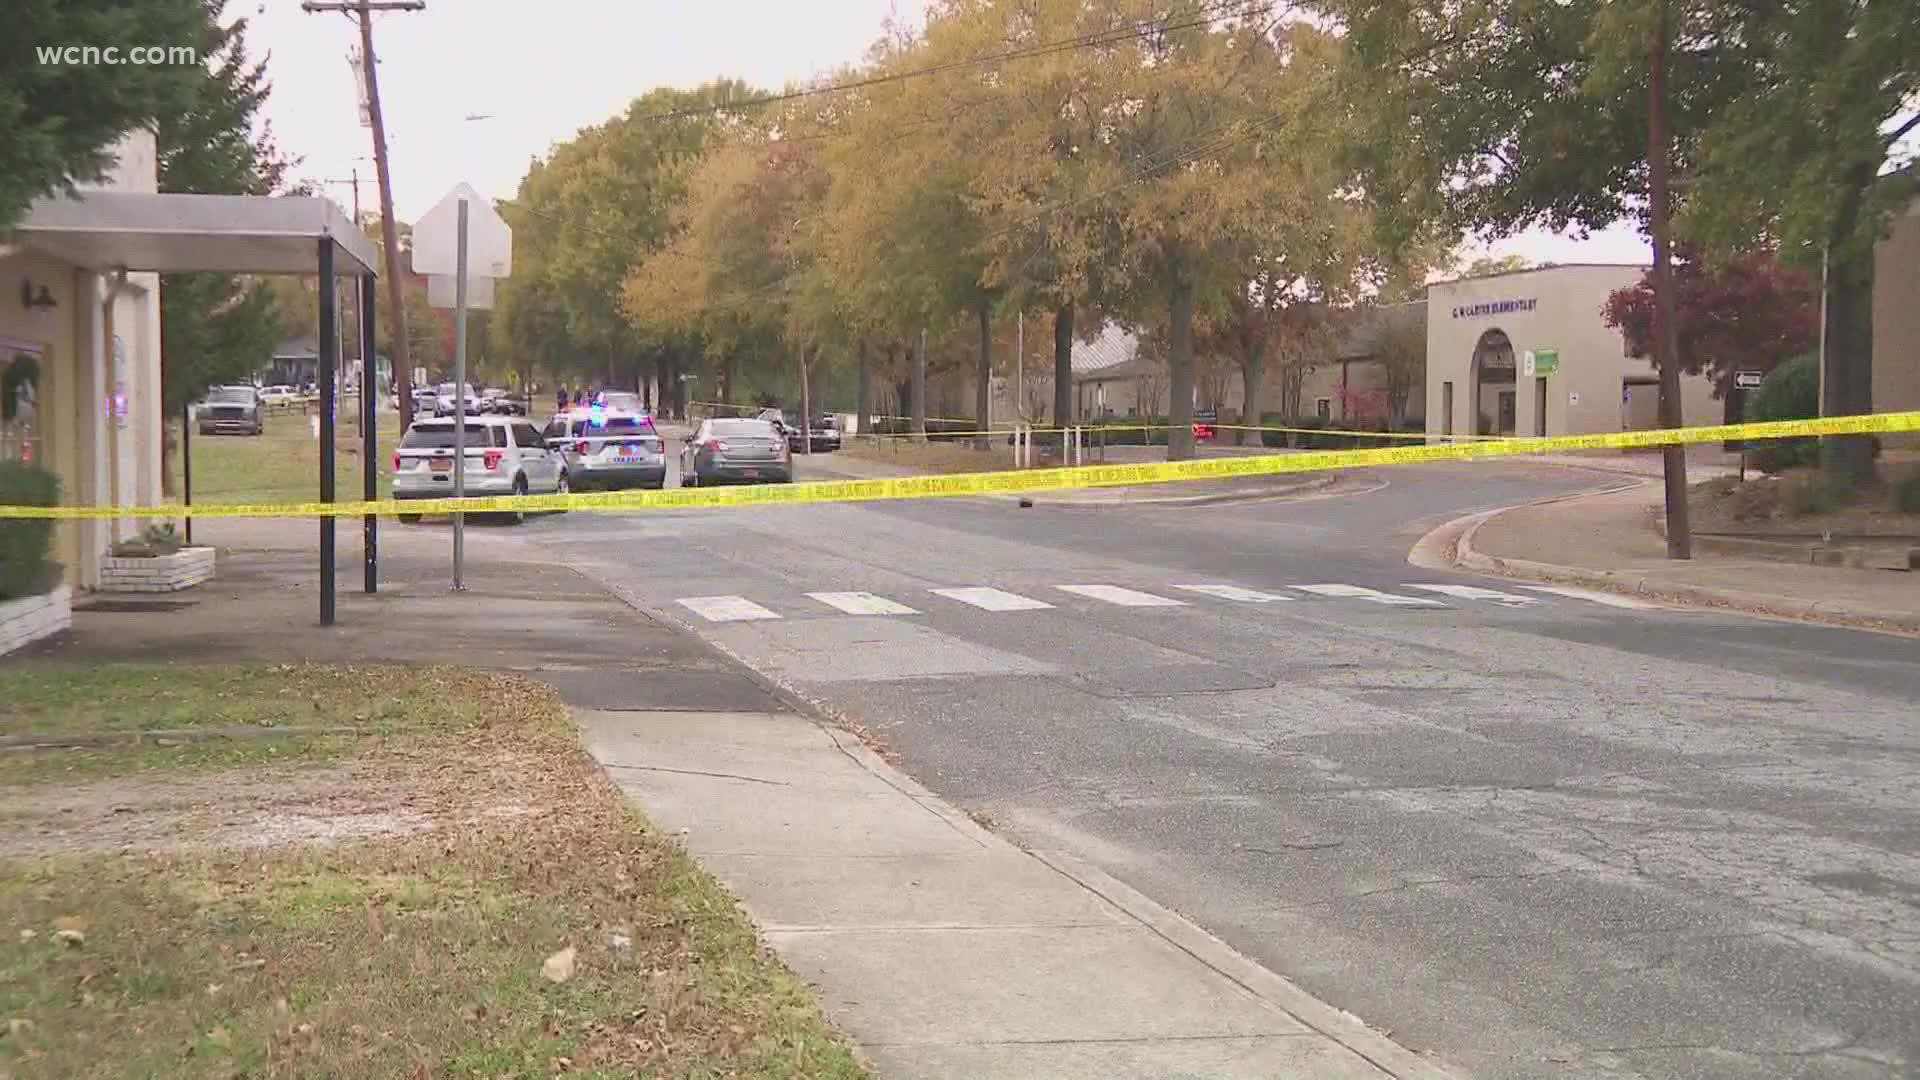 A 17-year-old boy was shot near an elementary school a week ago.